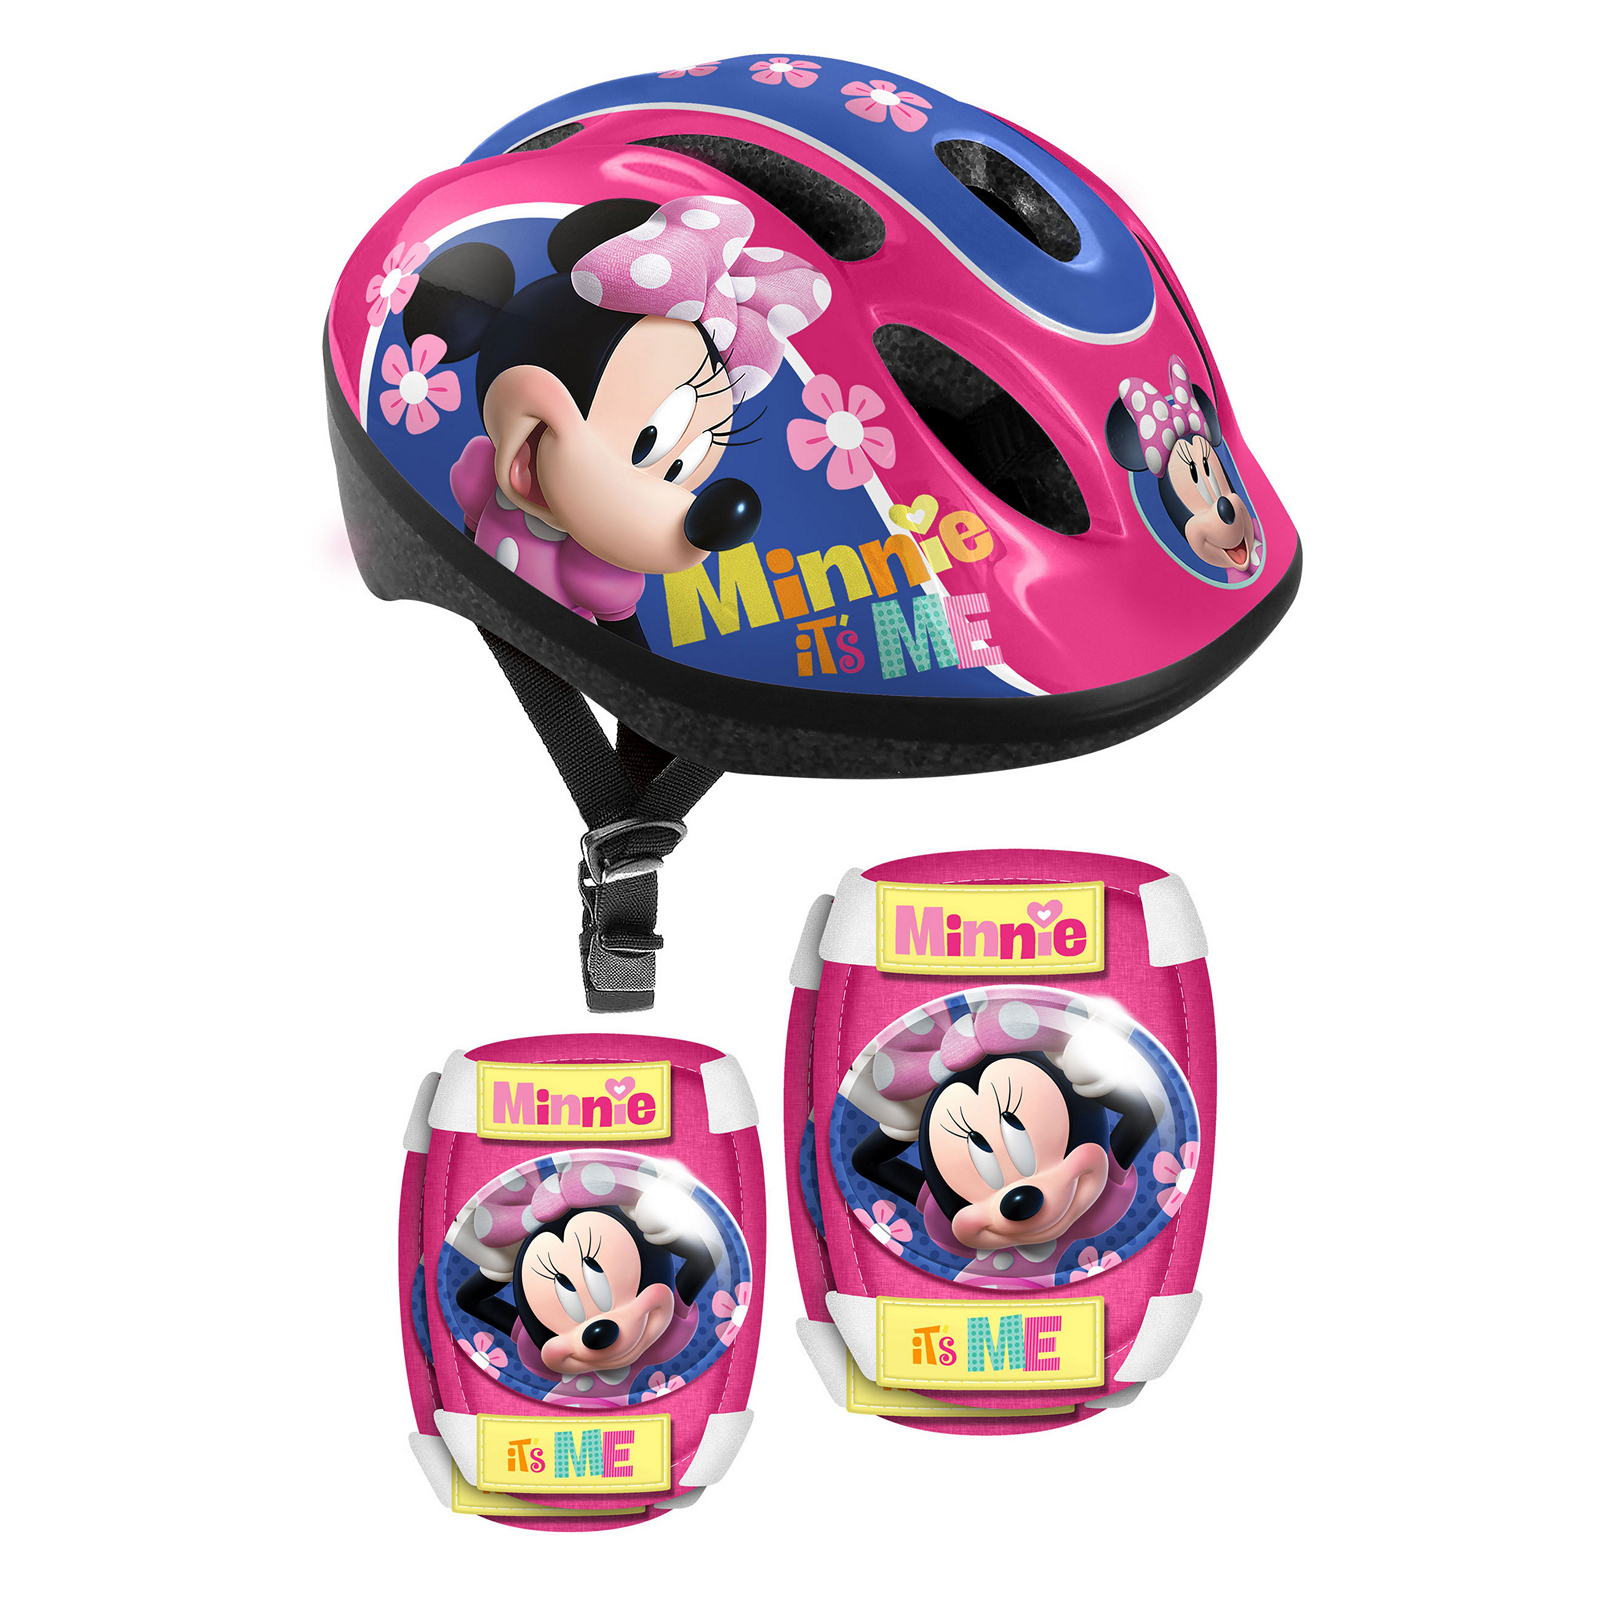 Capacete E Proteções Criança Minnie Mouse Tam. 53-56 Cm - rosa - 